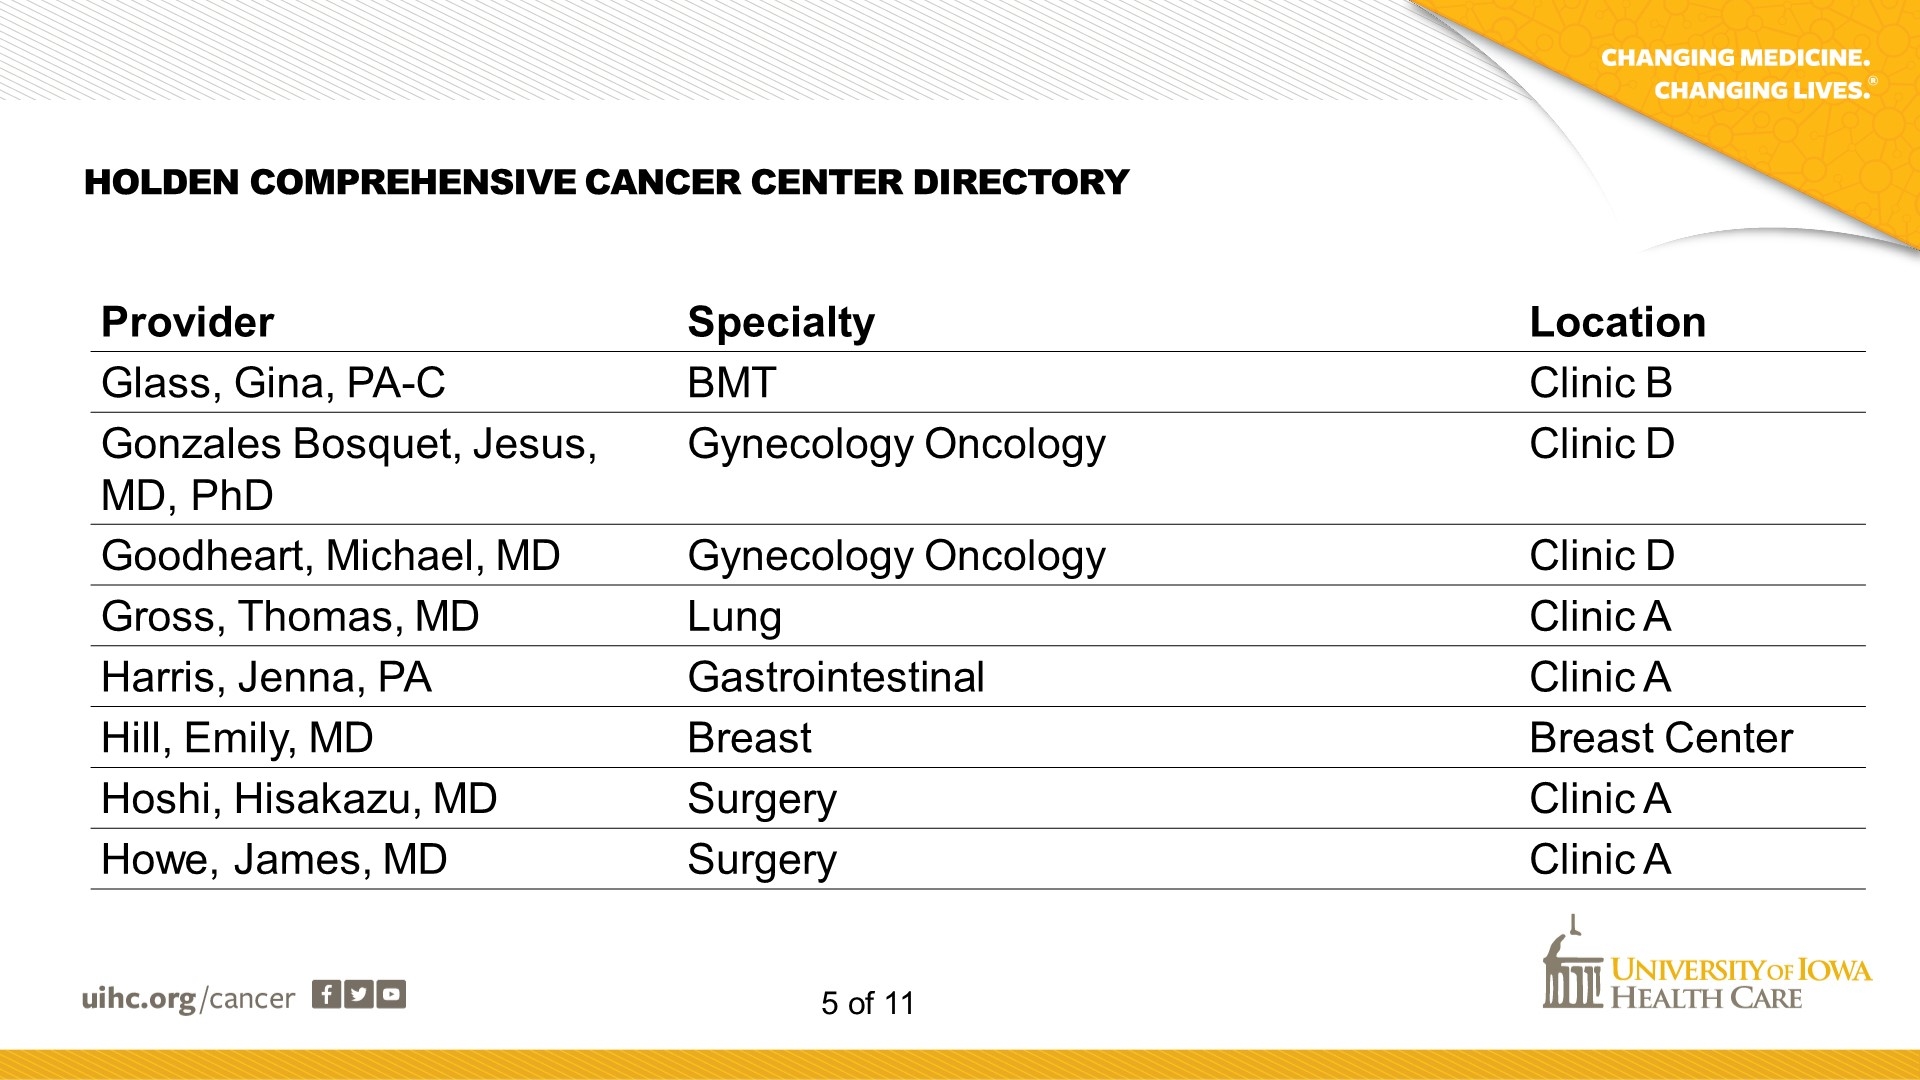 Cancer Center Directory - Slide 5